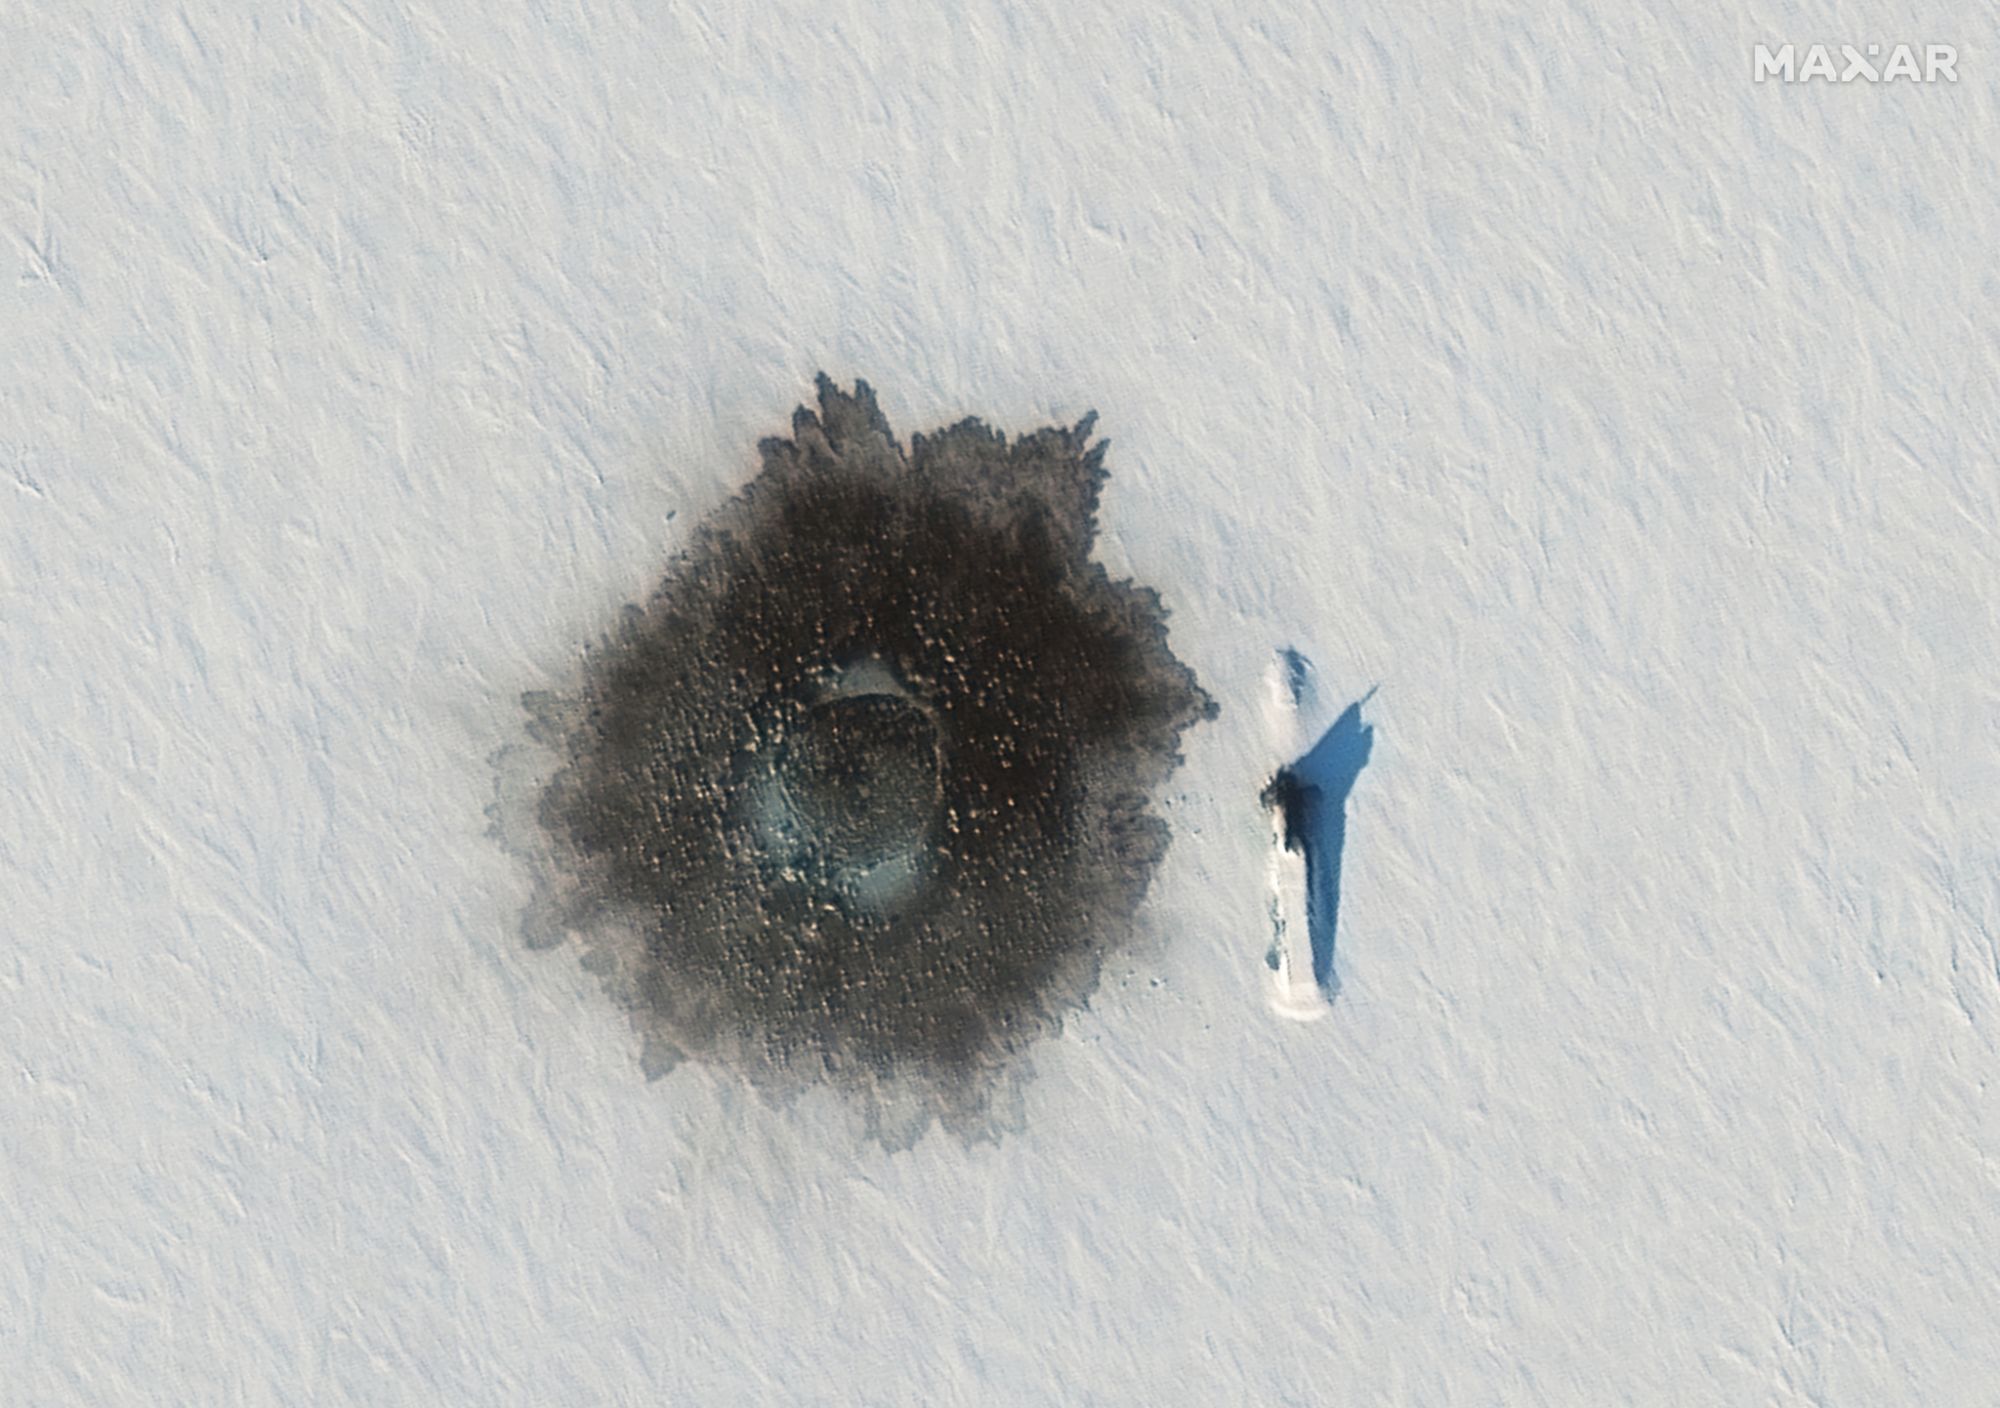 Атомная субмарина проекта «Дельфин» в Северном Ледовитом океане. Снимок в видимом диапазоне